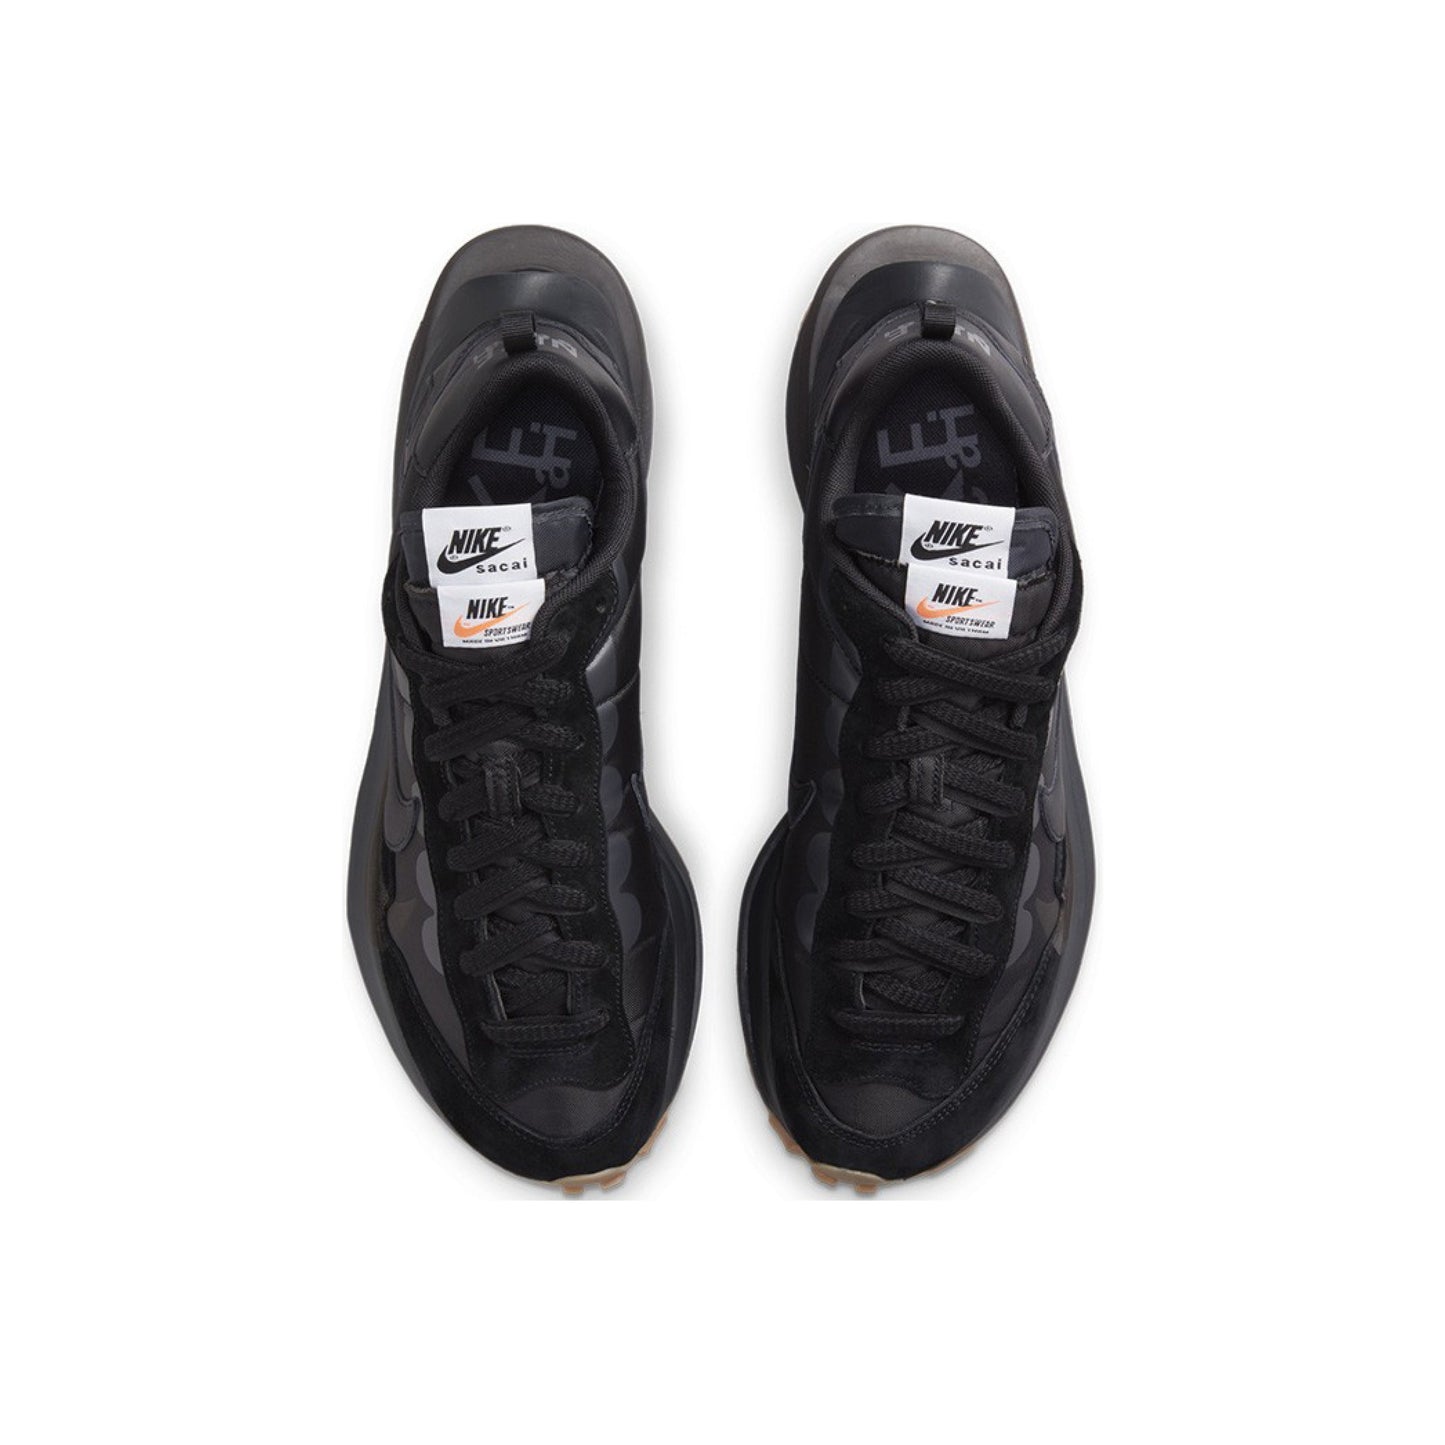 Nike Vaporwaffle x Sacai 'Black Gum'